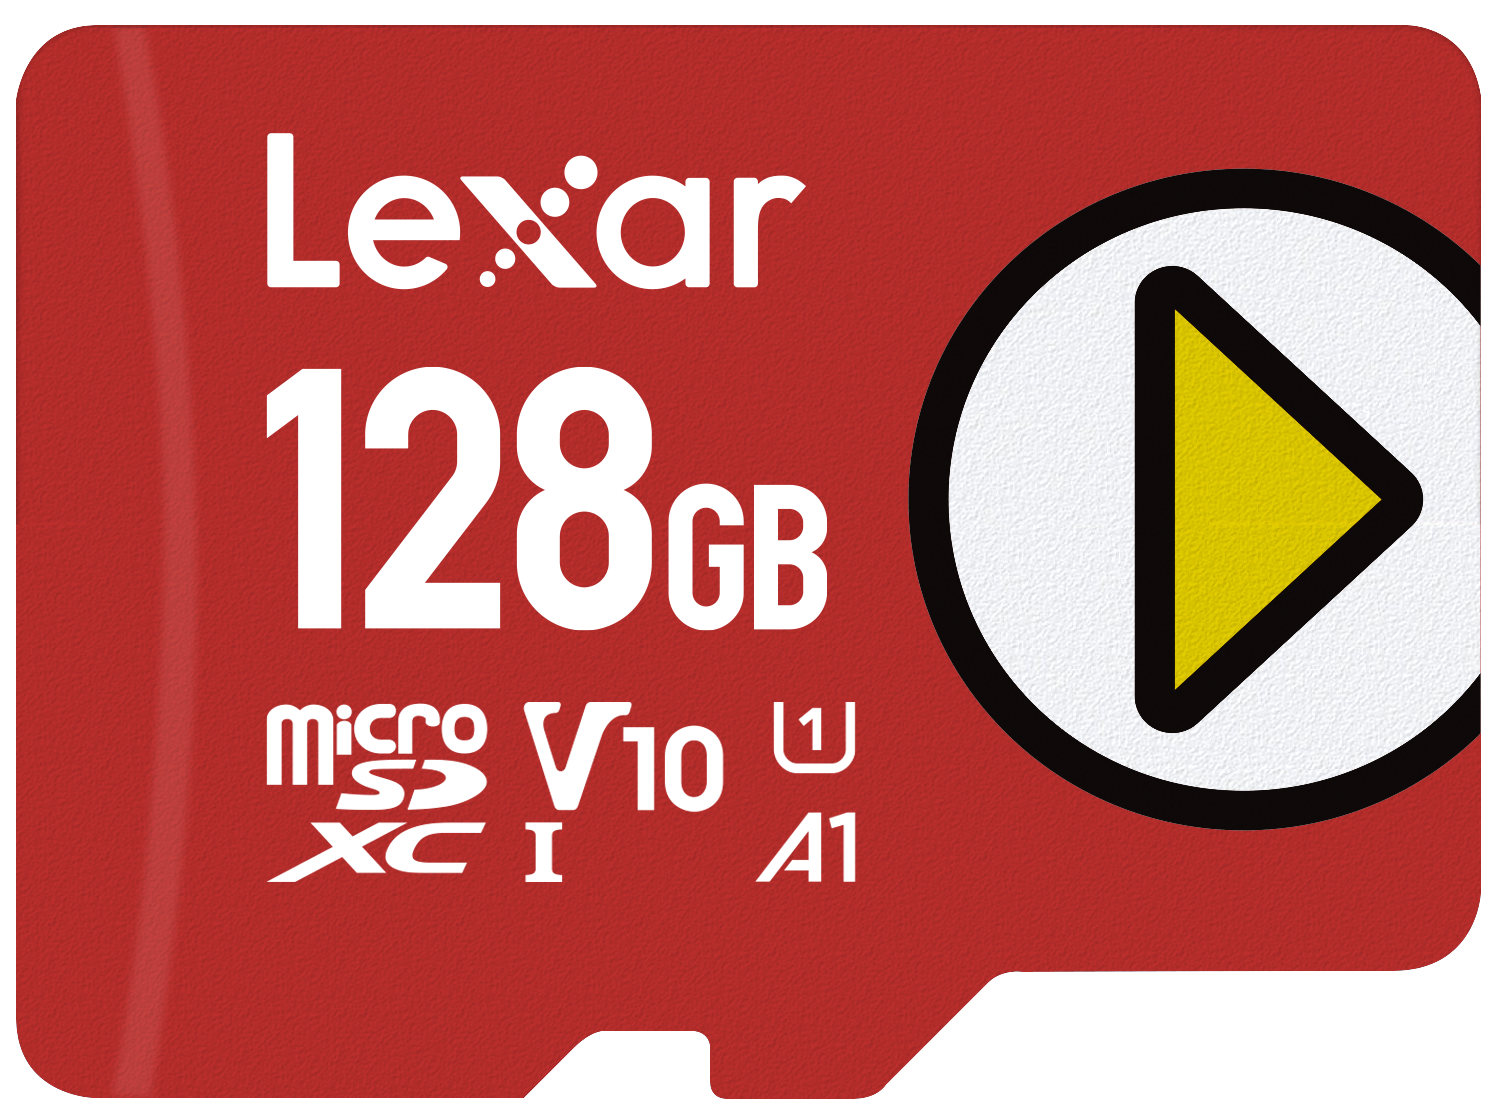 Lexar PLAY microSDXC UHS-I Card